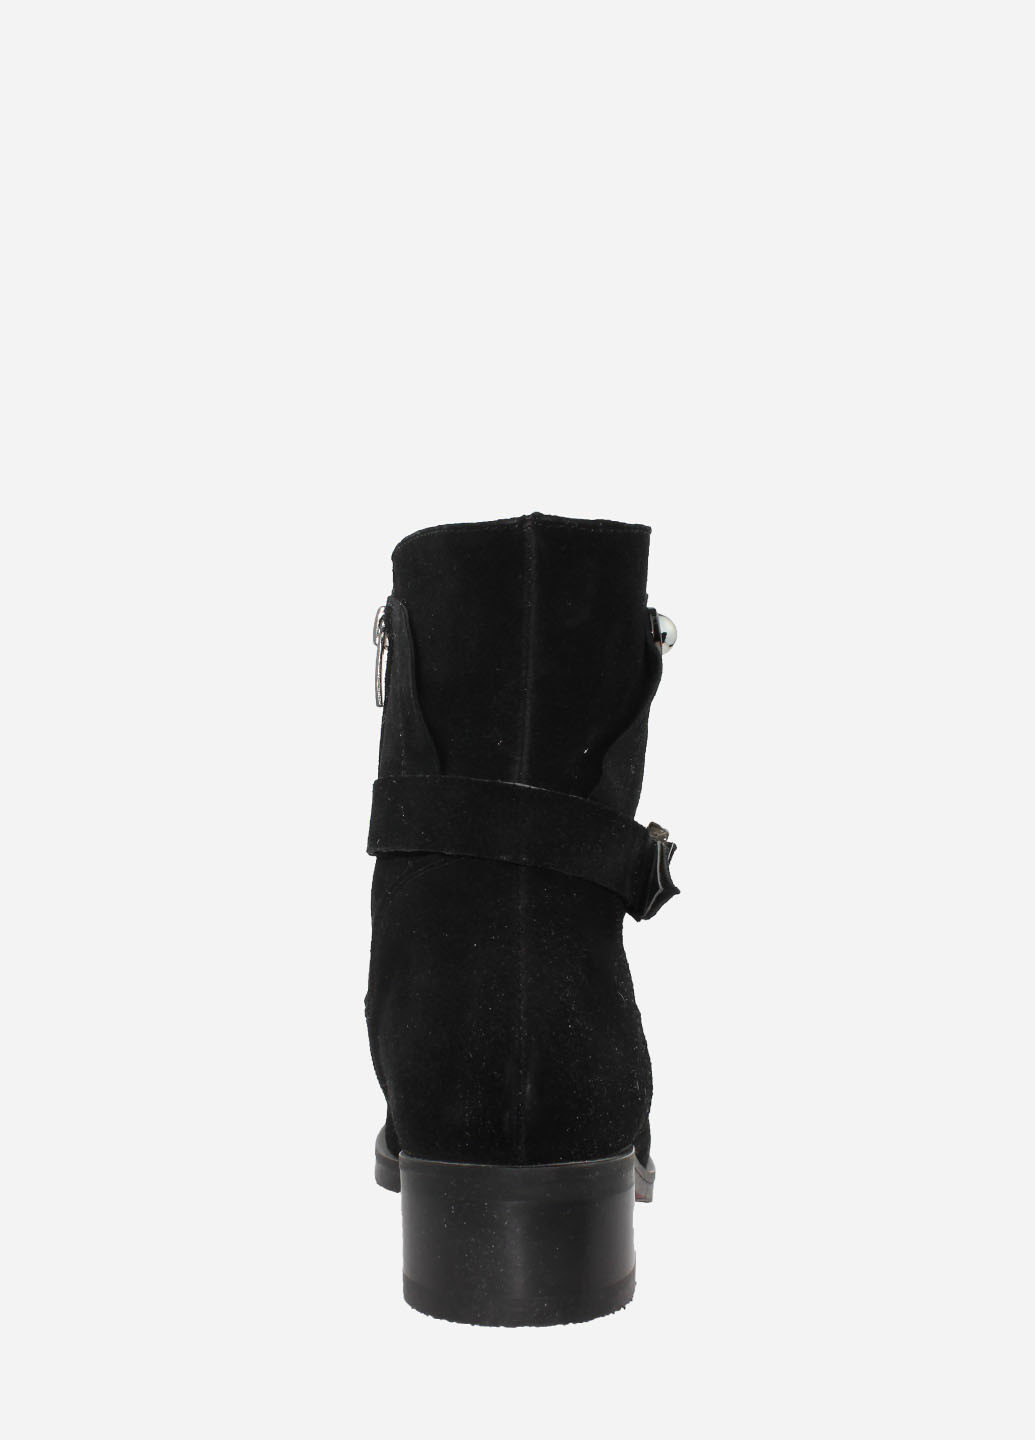 Зимние ботинки re355-11 черный Emilio из натуральной замши